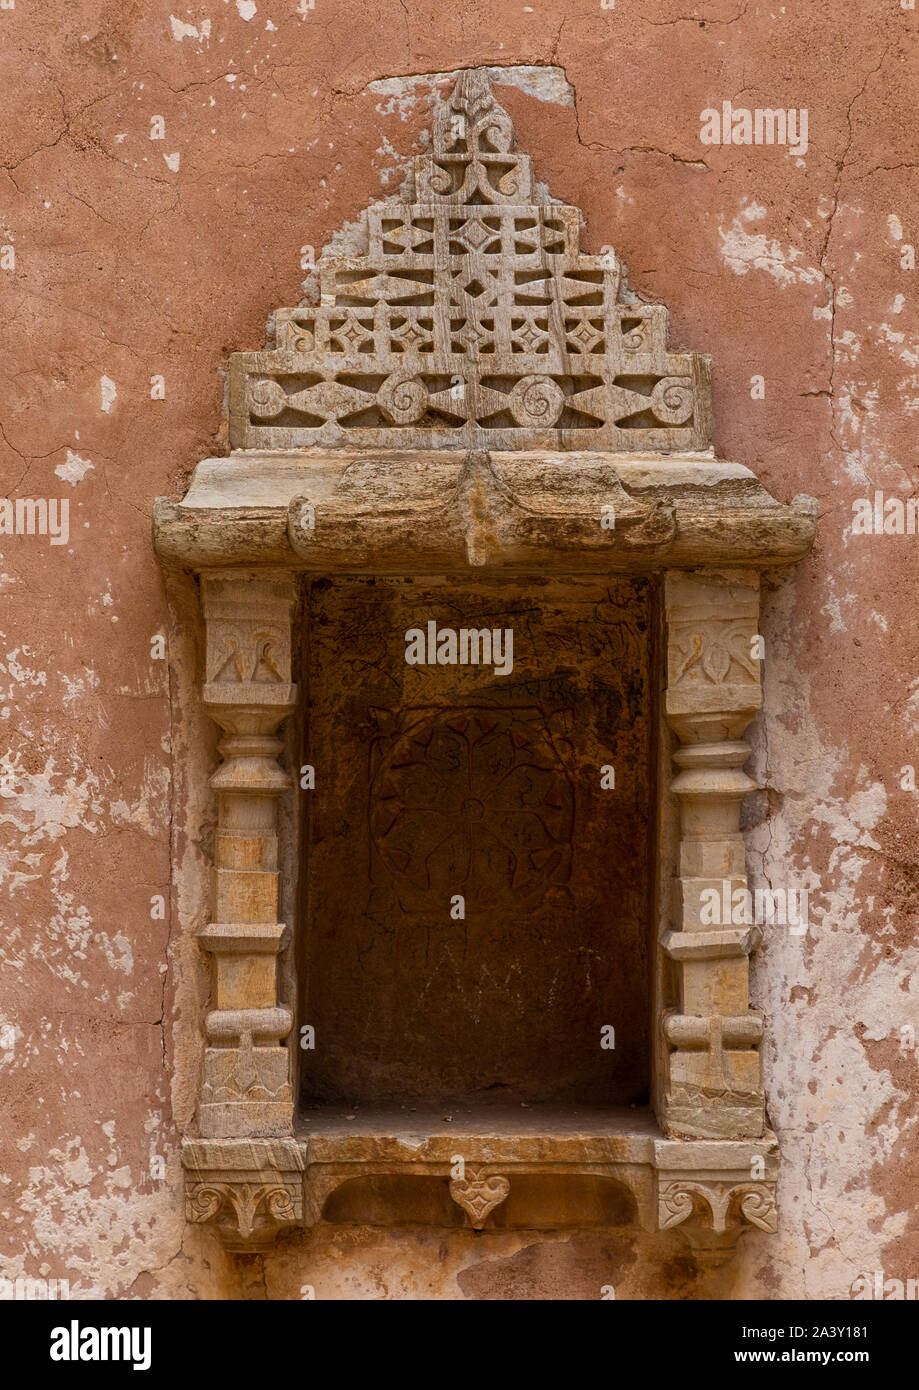 Rana kumbh palace window at Chittorgarh fort, Rajasthan, Chittorgarh, India Stock Photo